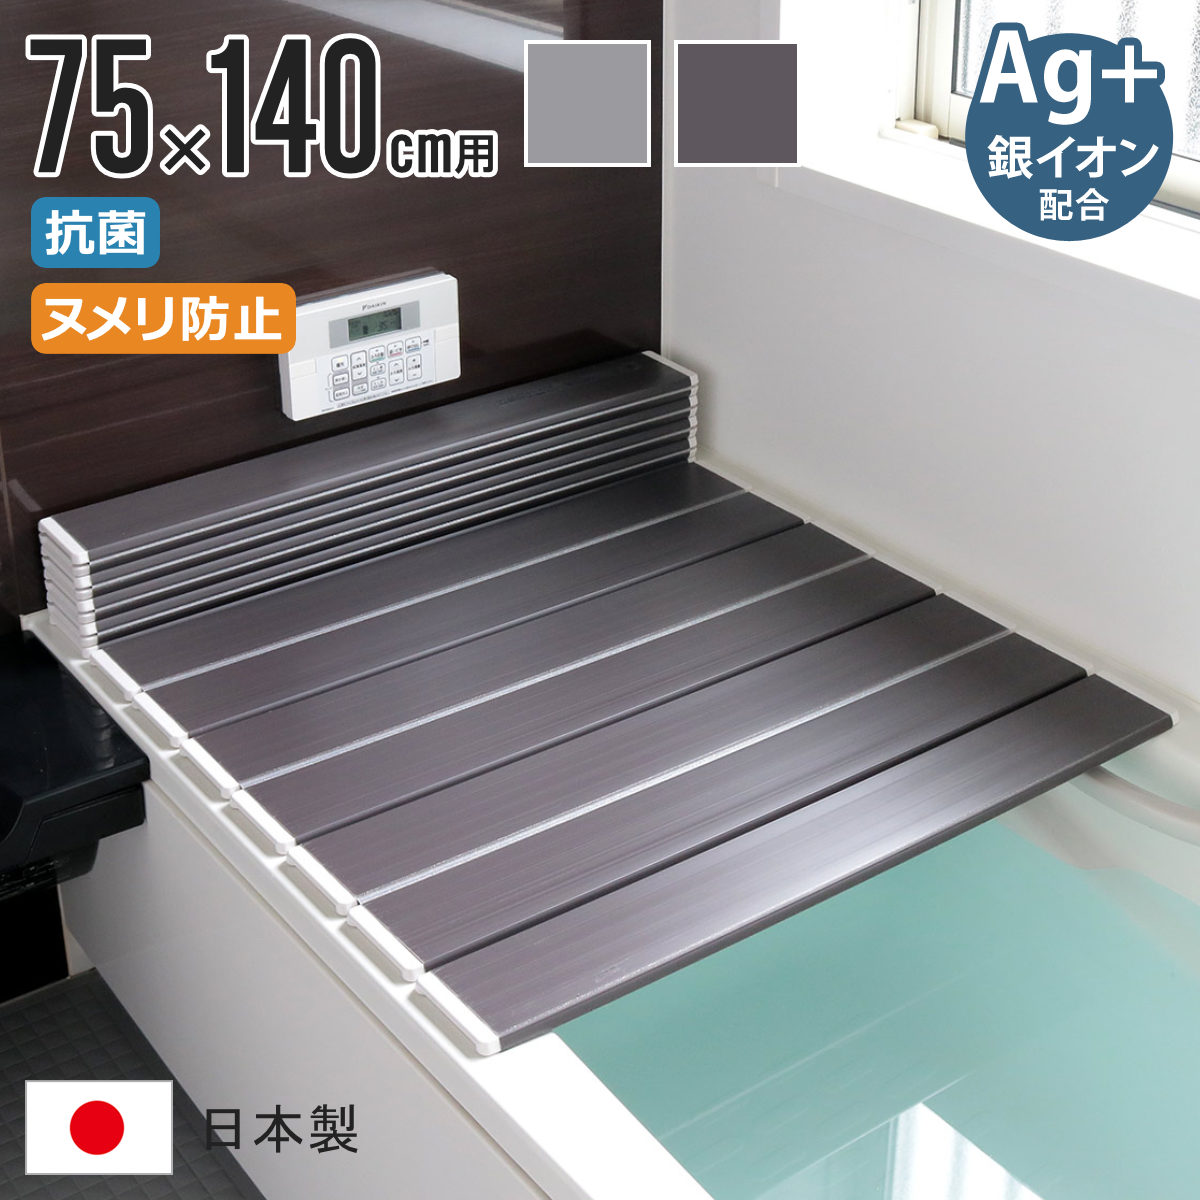 風呂ふた 折りたたみ式 L-14 75×140cm Ag銀イオン 防カビ 日本製